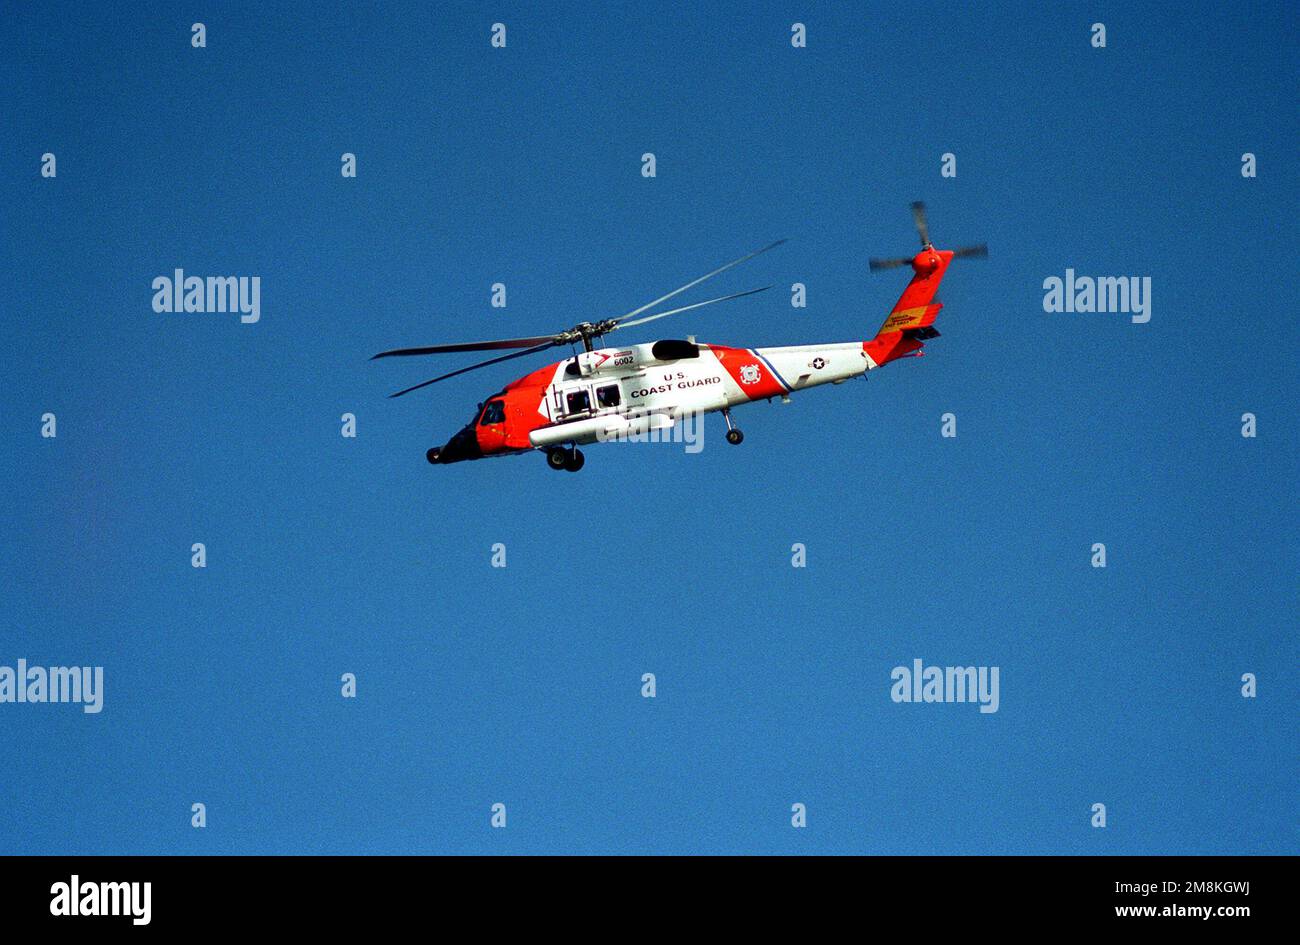 A ÉTATS-UNIS Hélicoptère Jayhawk HH-60J de la Garde côtière en vol. Base: Hampton roadstead État: Virginie (va) pays: Etats-Unis d'Amérique (USA) Banque D'Images